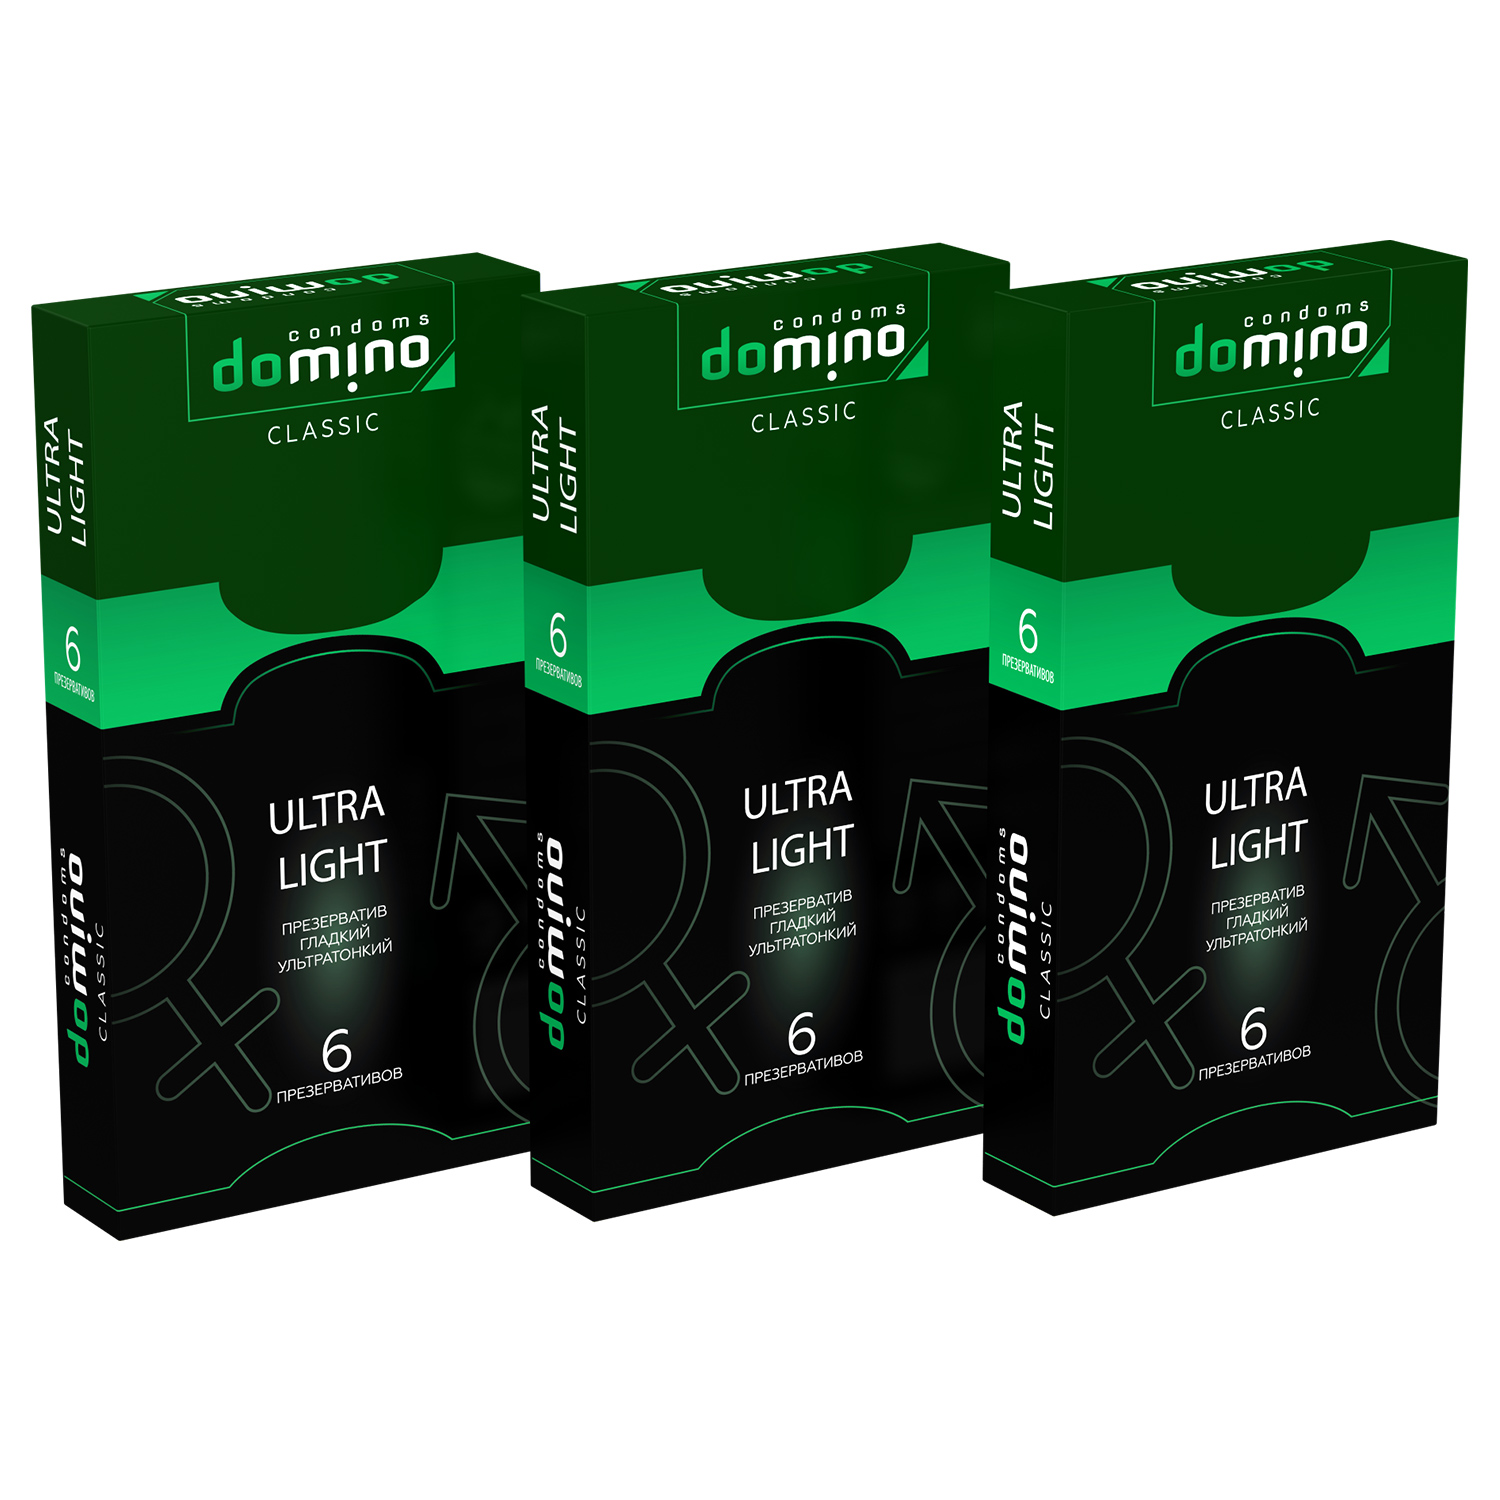 Презервативы Domino Classic Ultra Light 6 шт комплект из 3 пачек  - купить со скидкой